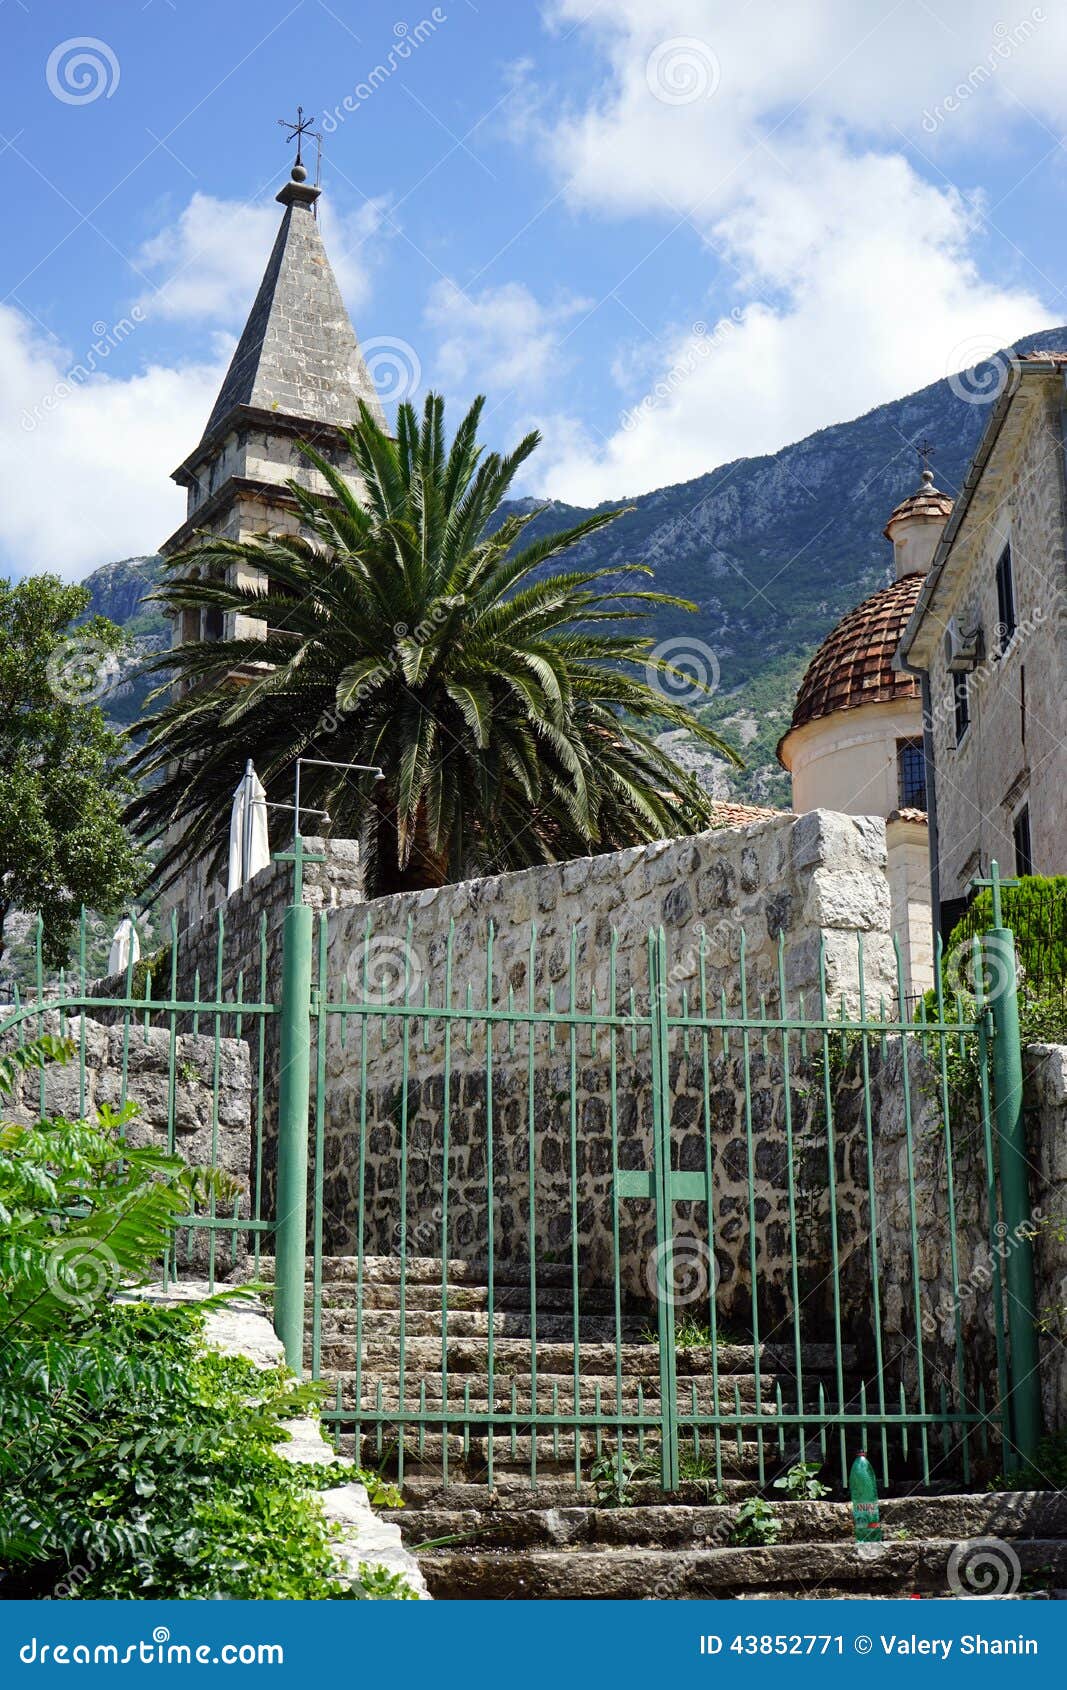 Treppenhaus und Kirche. Treppenhaus und alte Kirche in Kotor, Montenegro